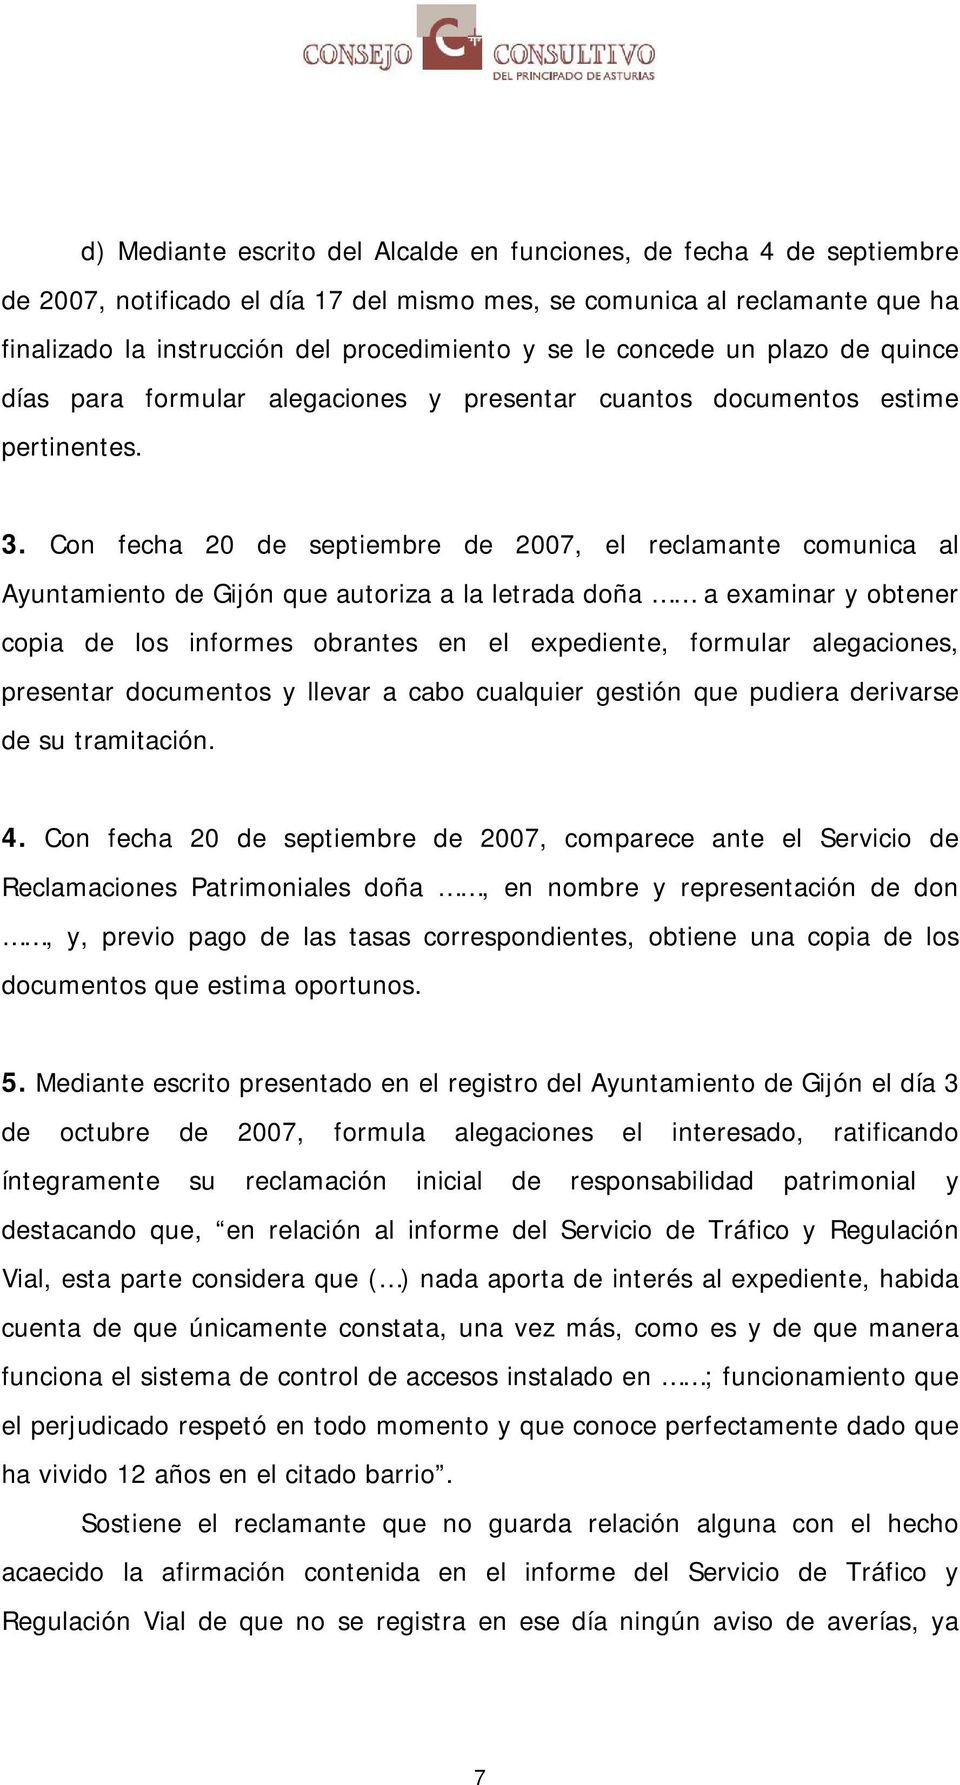 Con fecha 20 de septiembre de 2007, el reclamante comunica al Ayuntamiento de Gijón que autoriza a la letrada doña a examinar y obtener copia de los informes obrantes en el expediente, formular